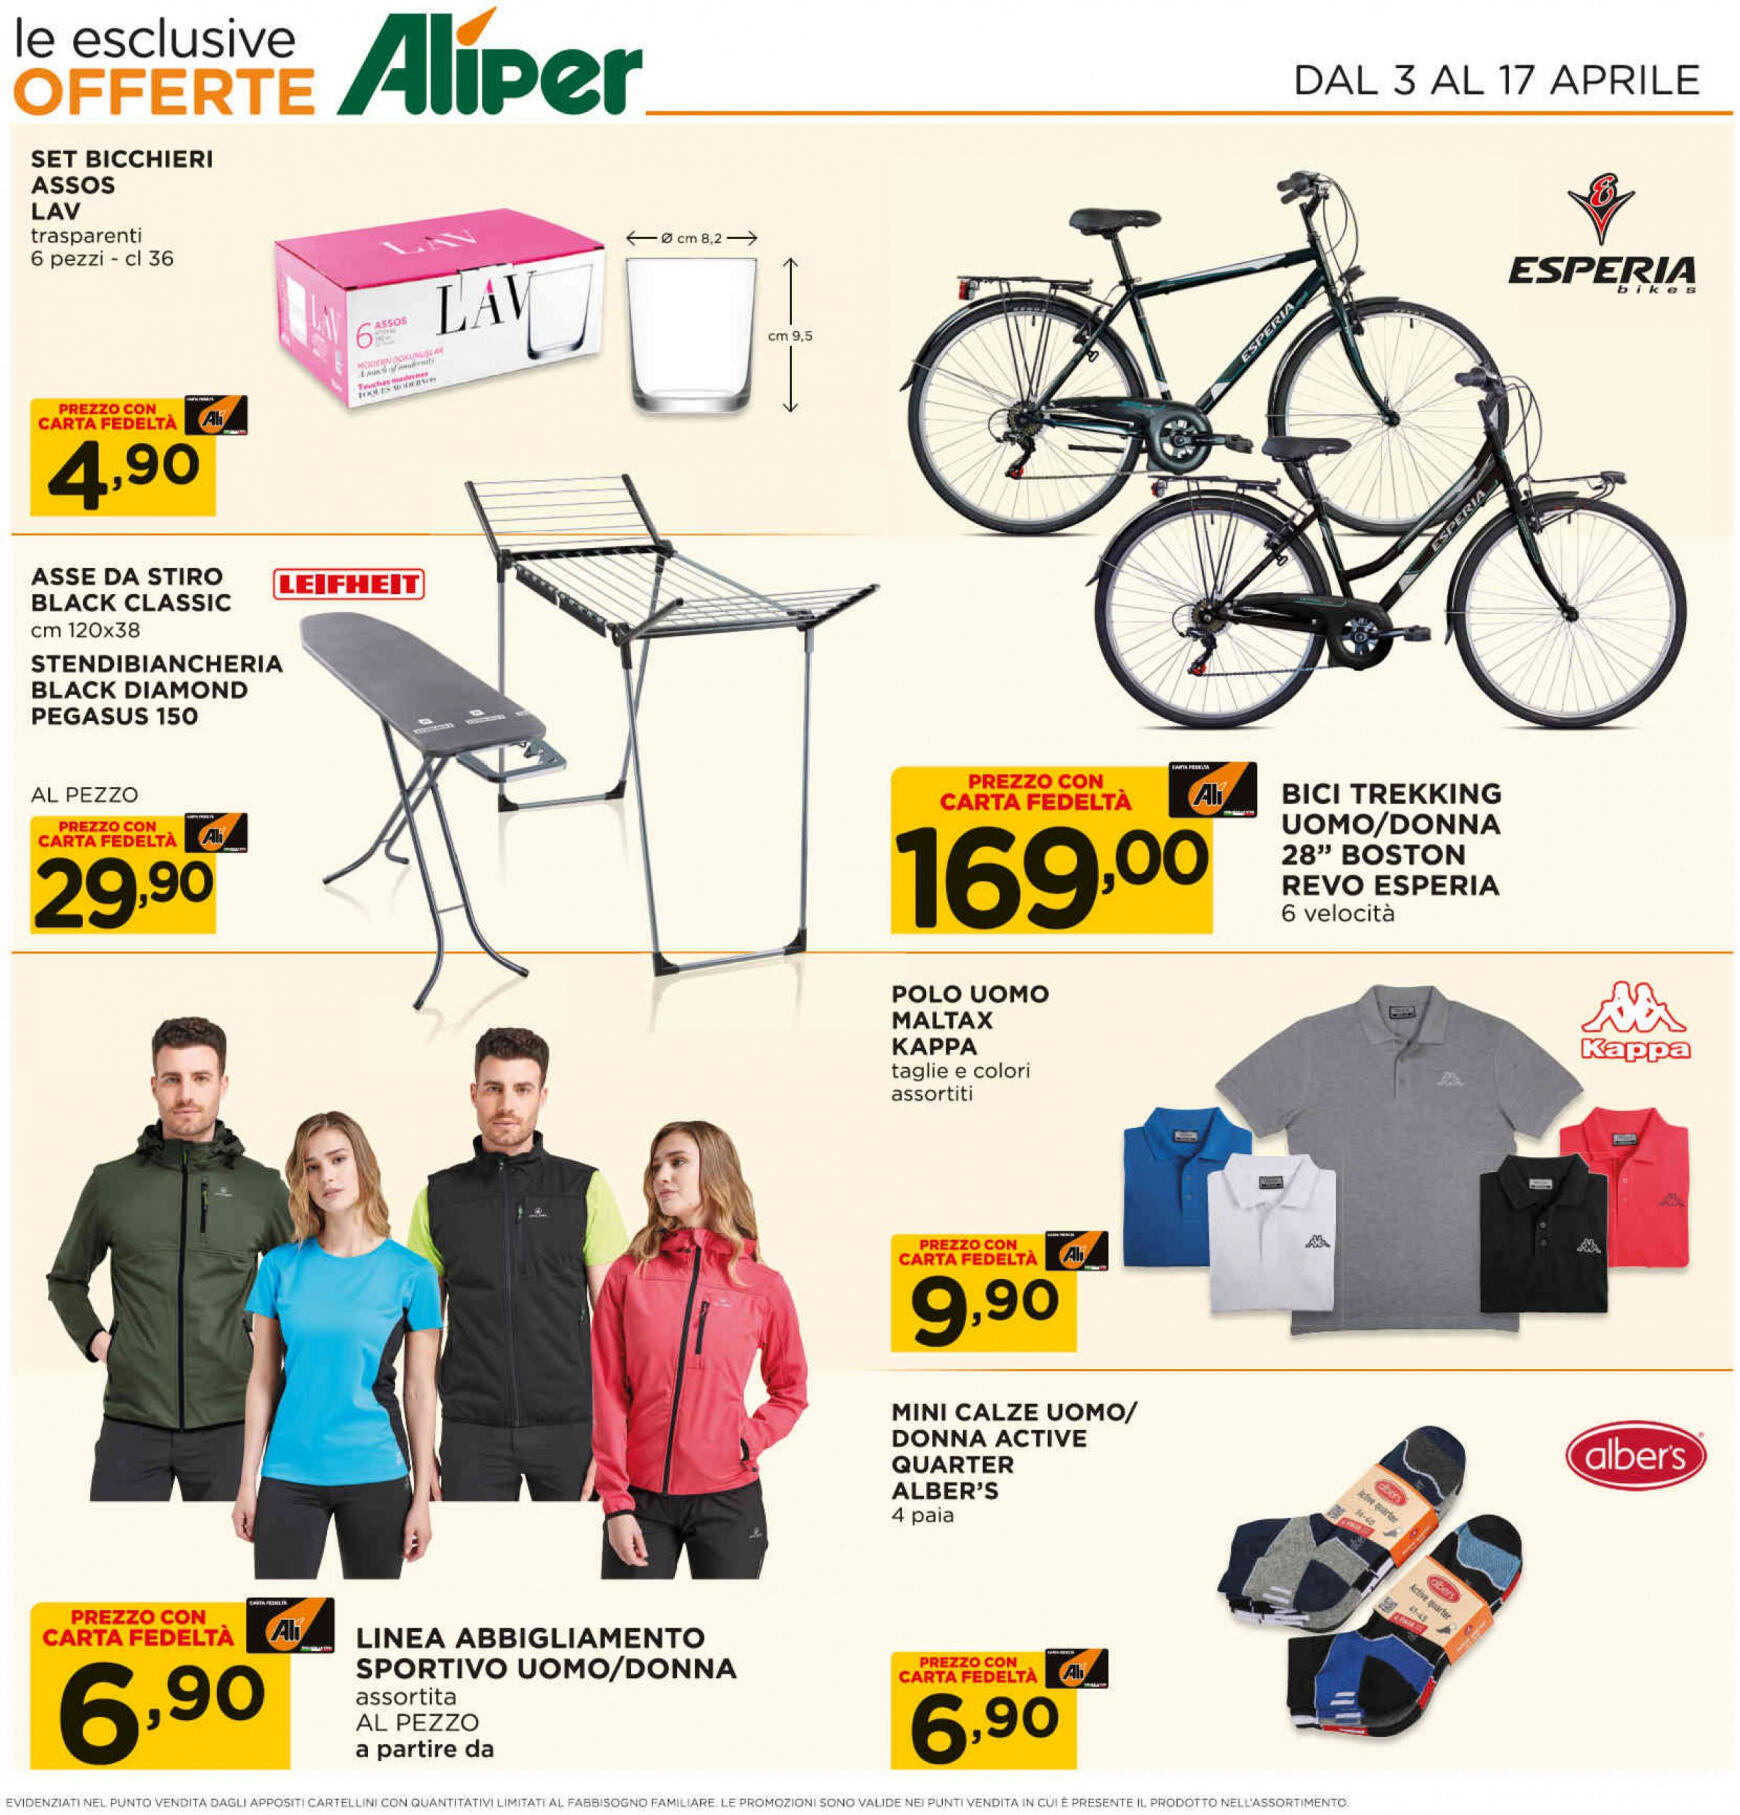 ali-aliper - Nuovo volantino Ali - Aliper - Coppie online 03.04. - 17.04. - page: 19